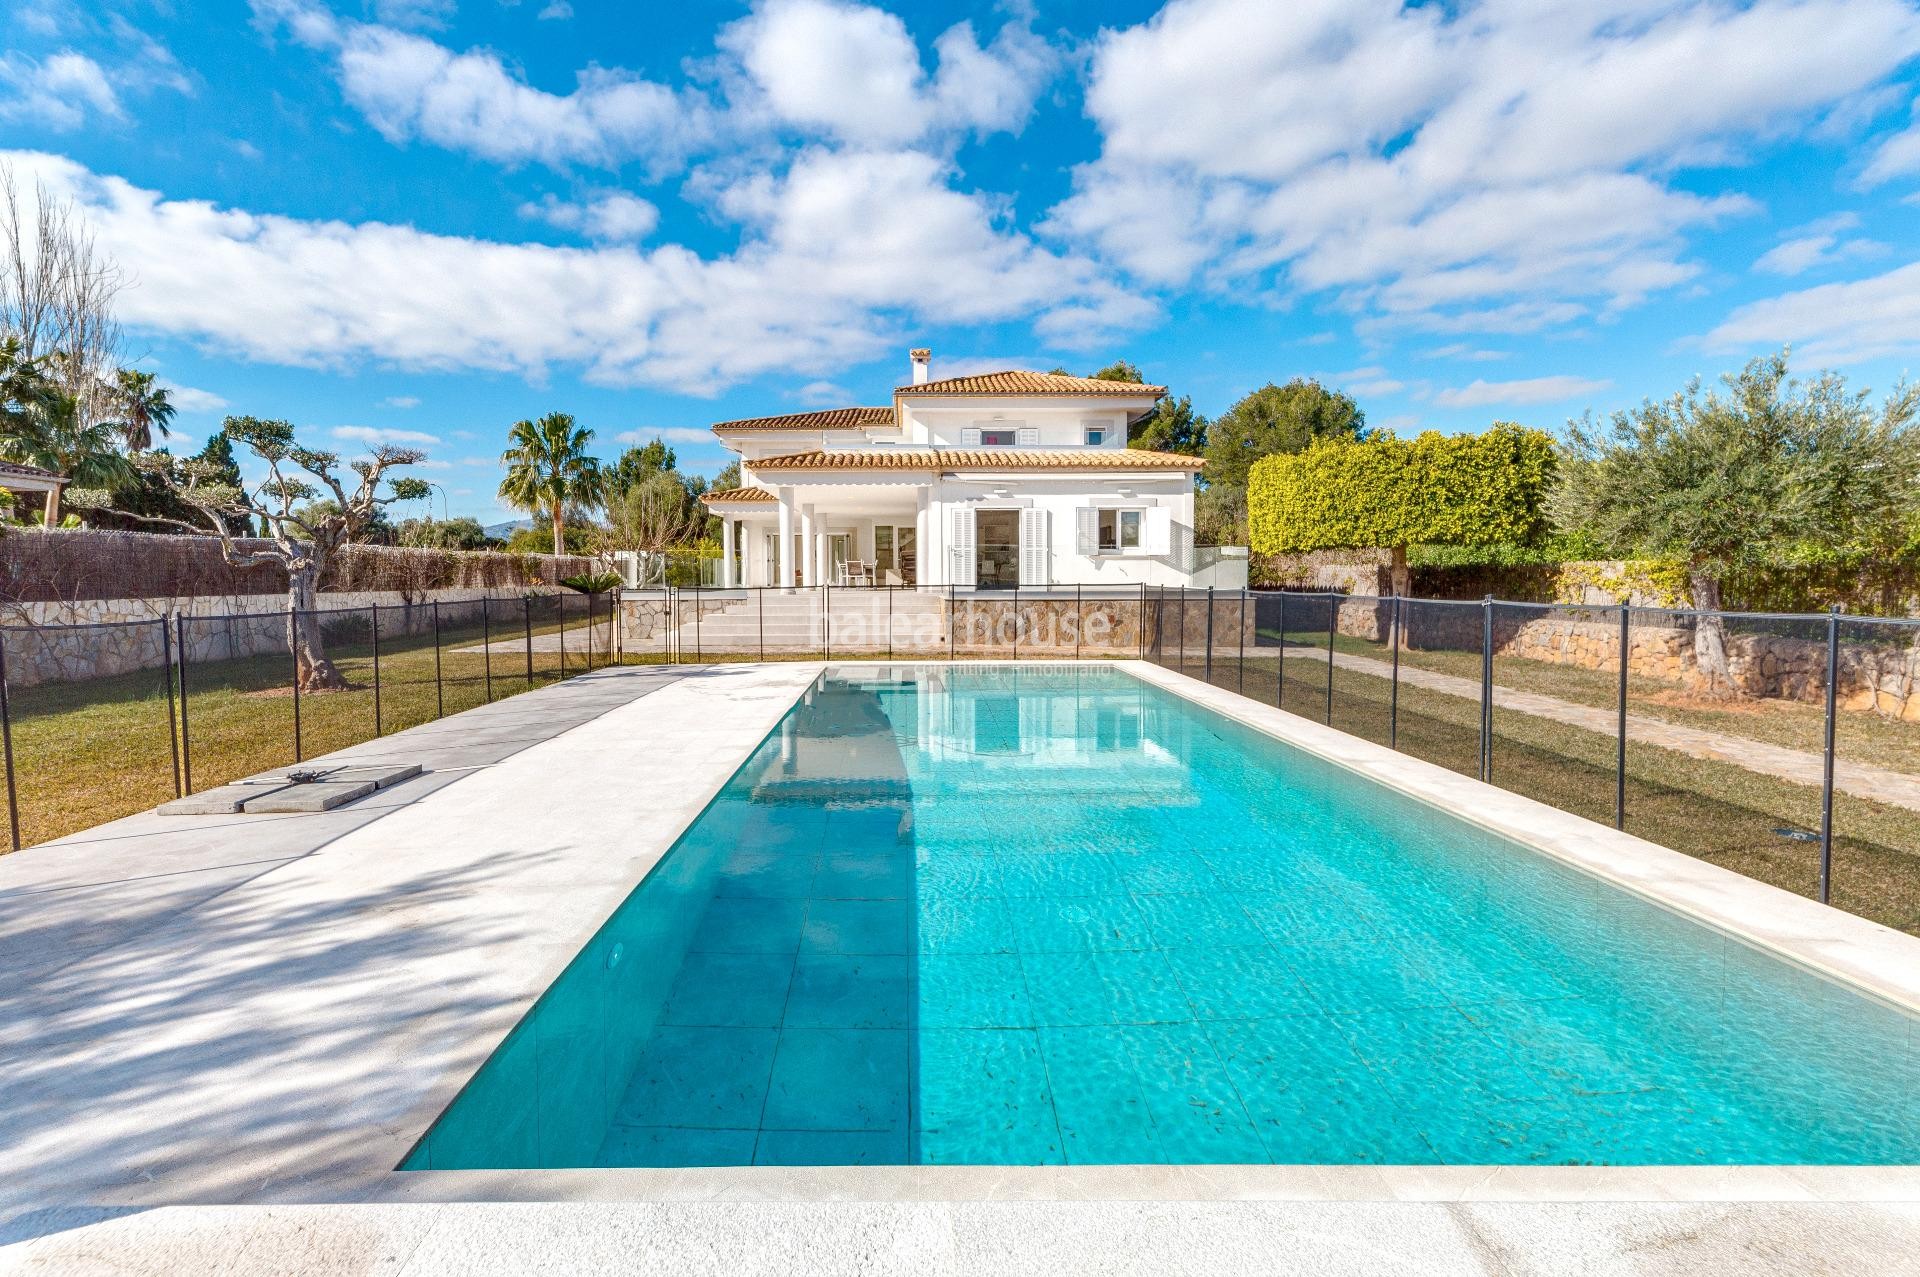 Villa im mediterranen Stil nur wenige Minuten vom Meer entfernt in Puerto Pollensa